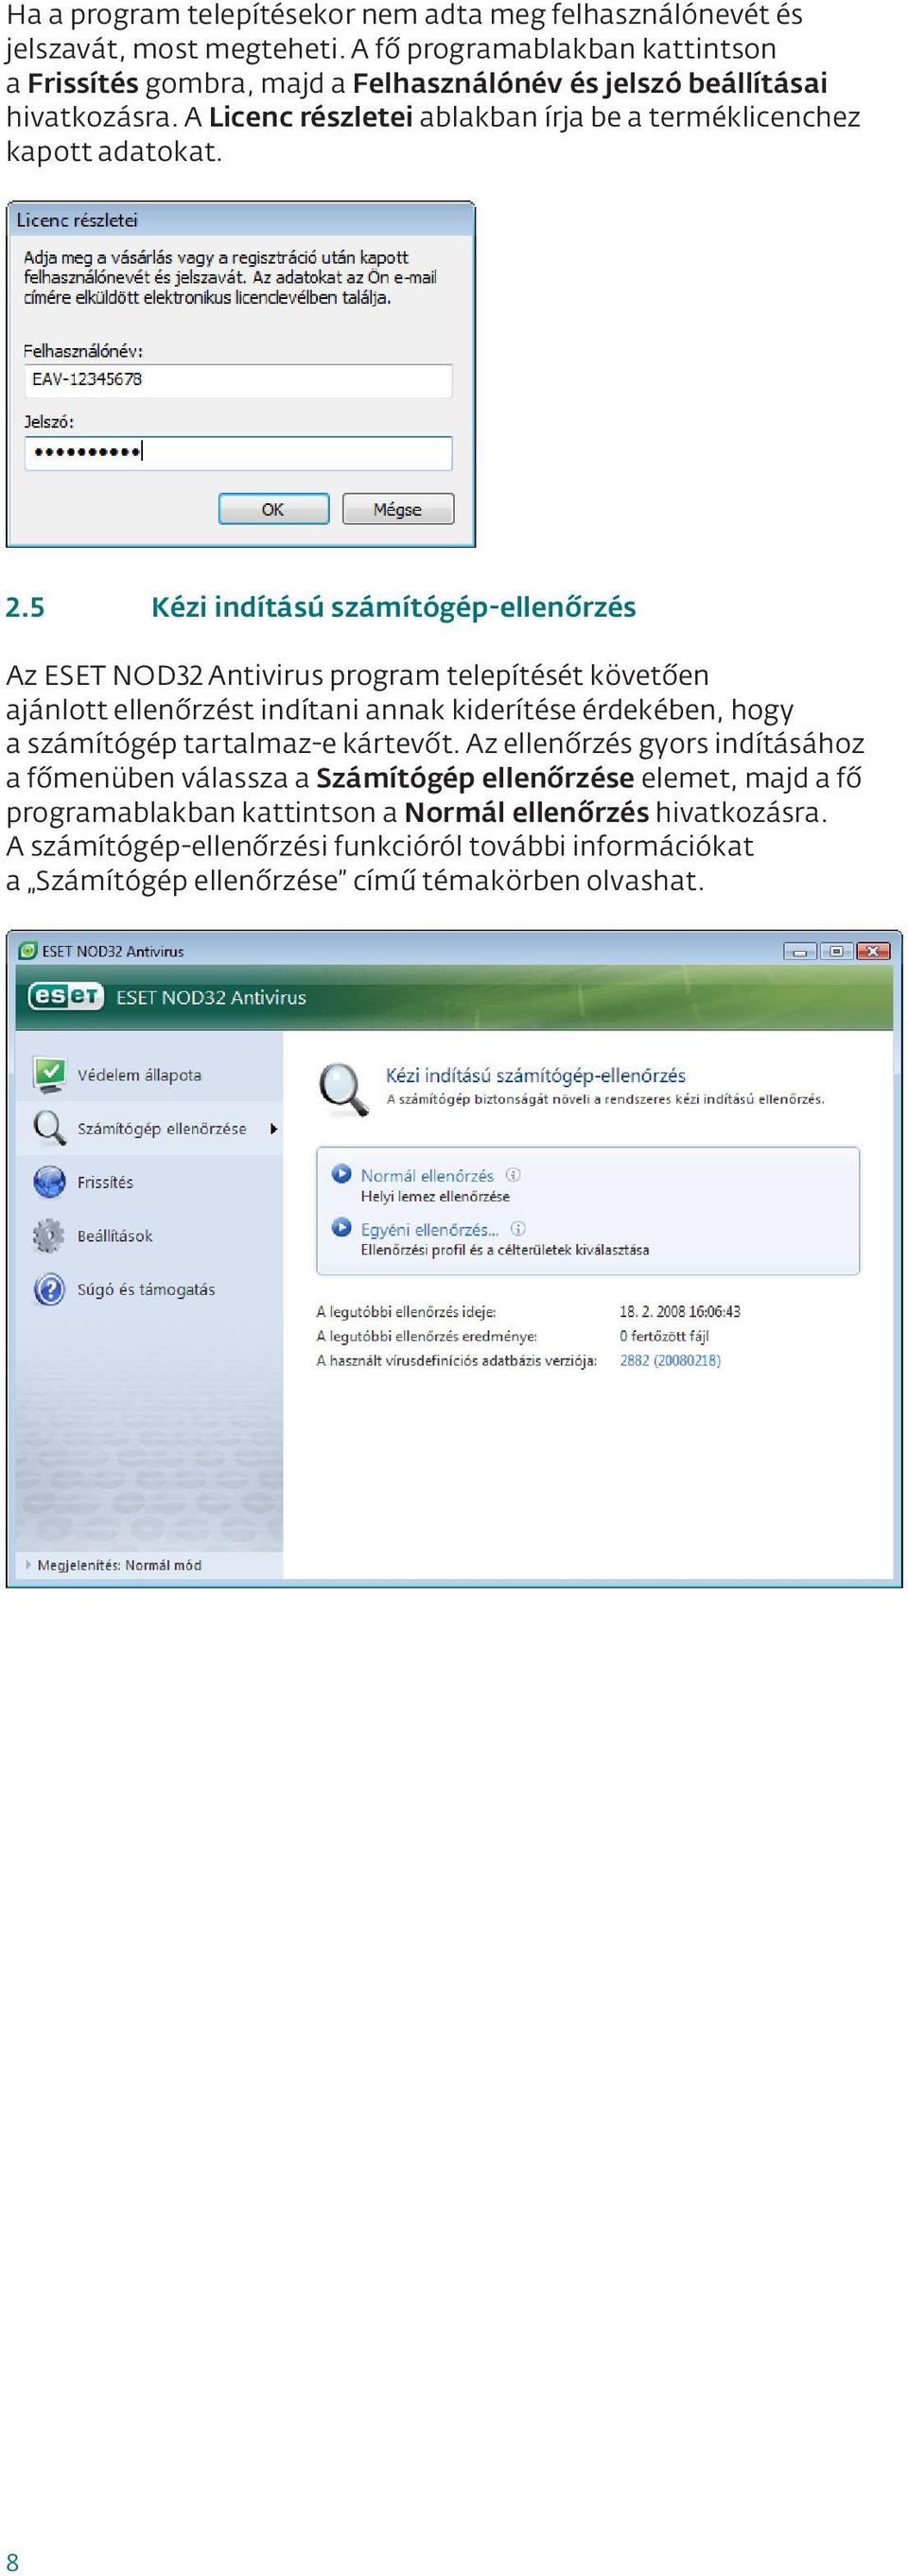 2.5 Kézi indítású számítógép-ellenőrzés Az ESET NOD32 Antivirus program telepítését követően ajánlott ellenőrzést indítani annak kiderítése érdekében, hogy a számítógép tartalmaz-e